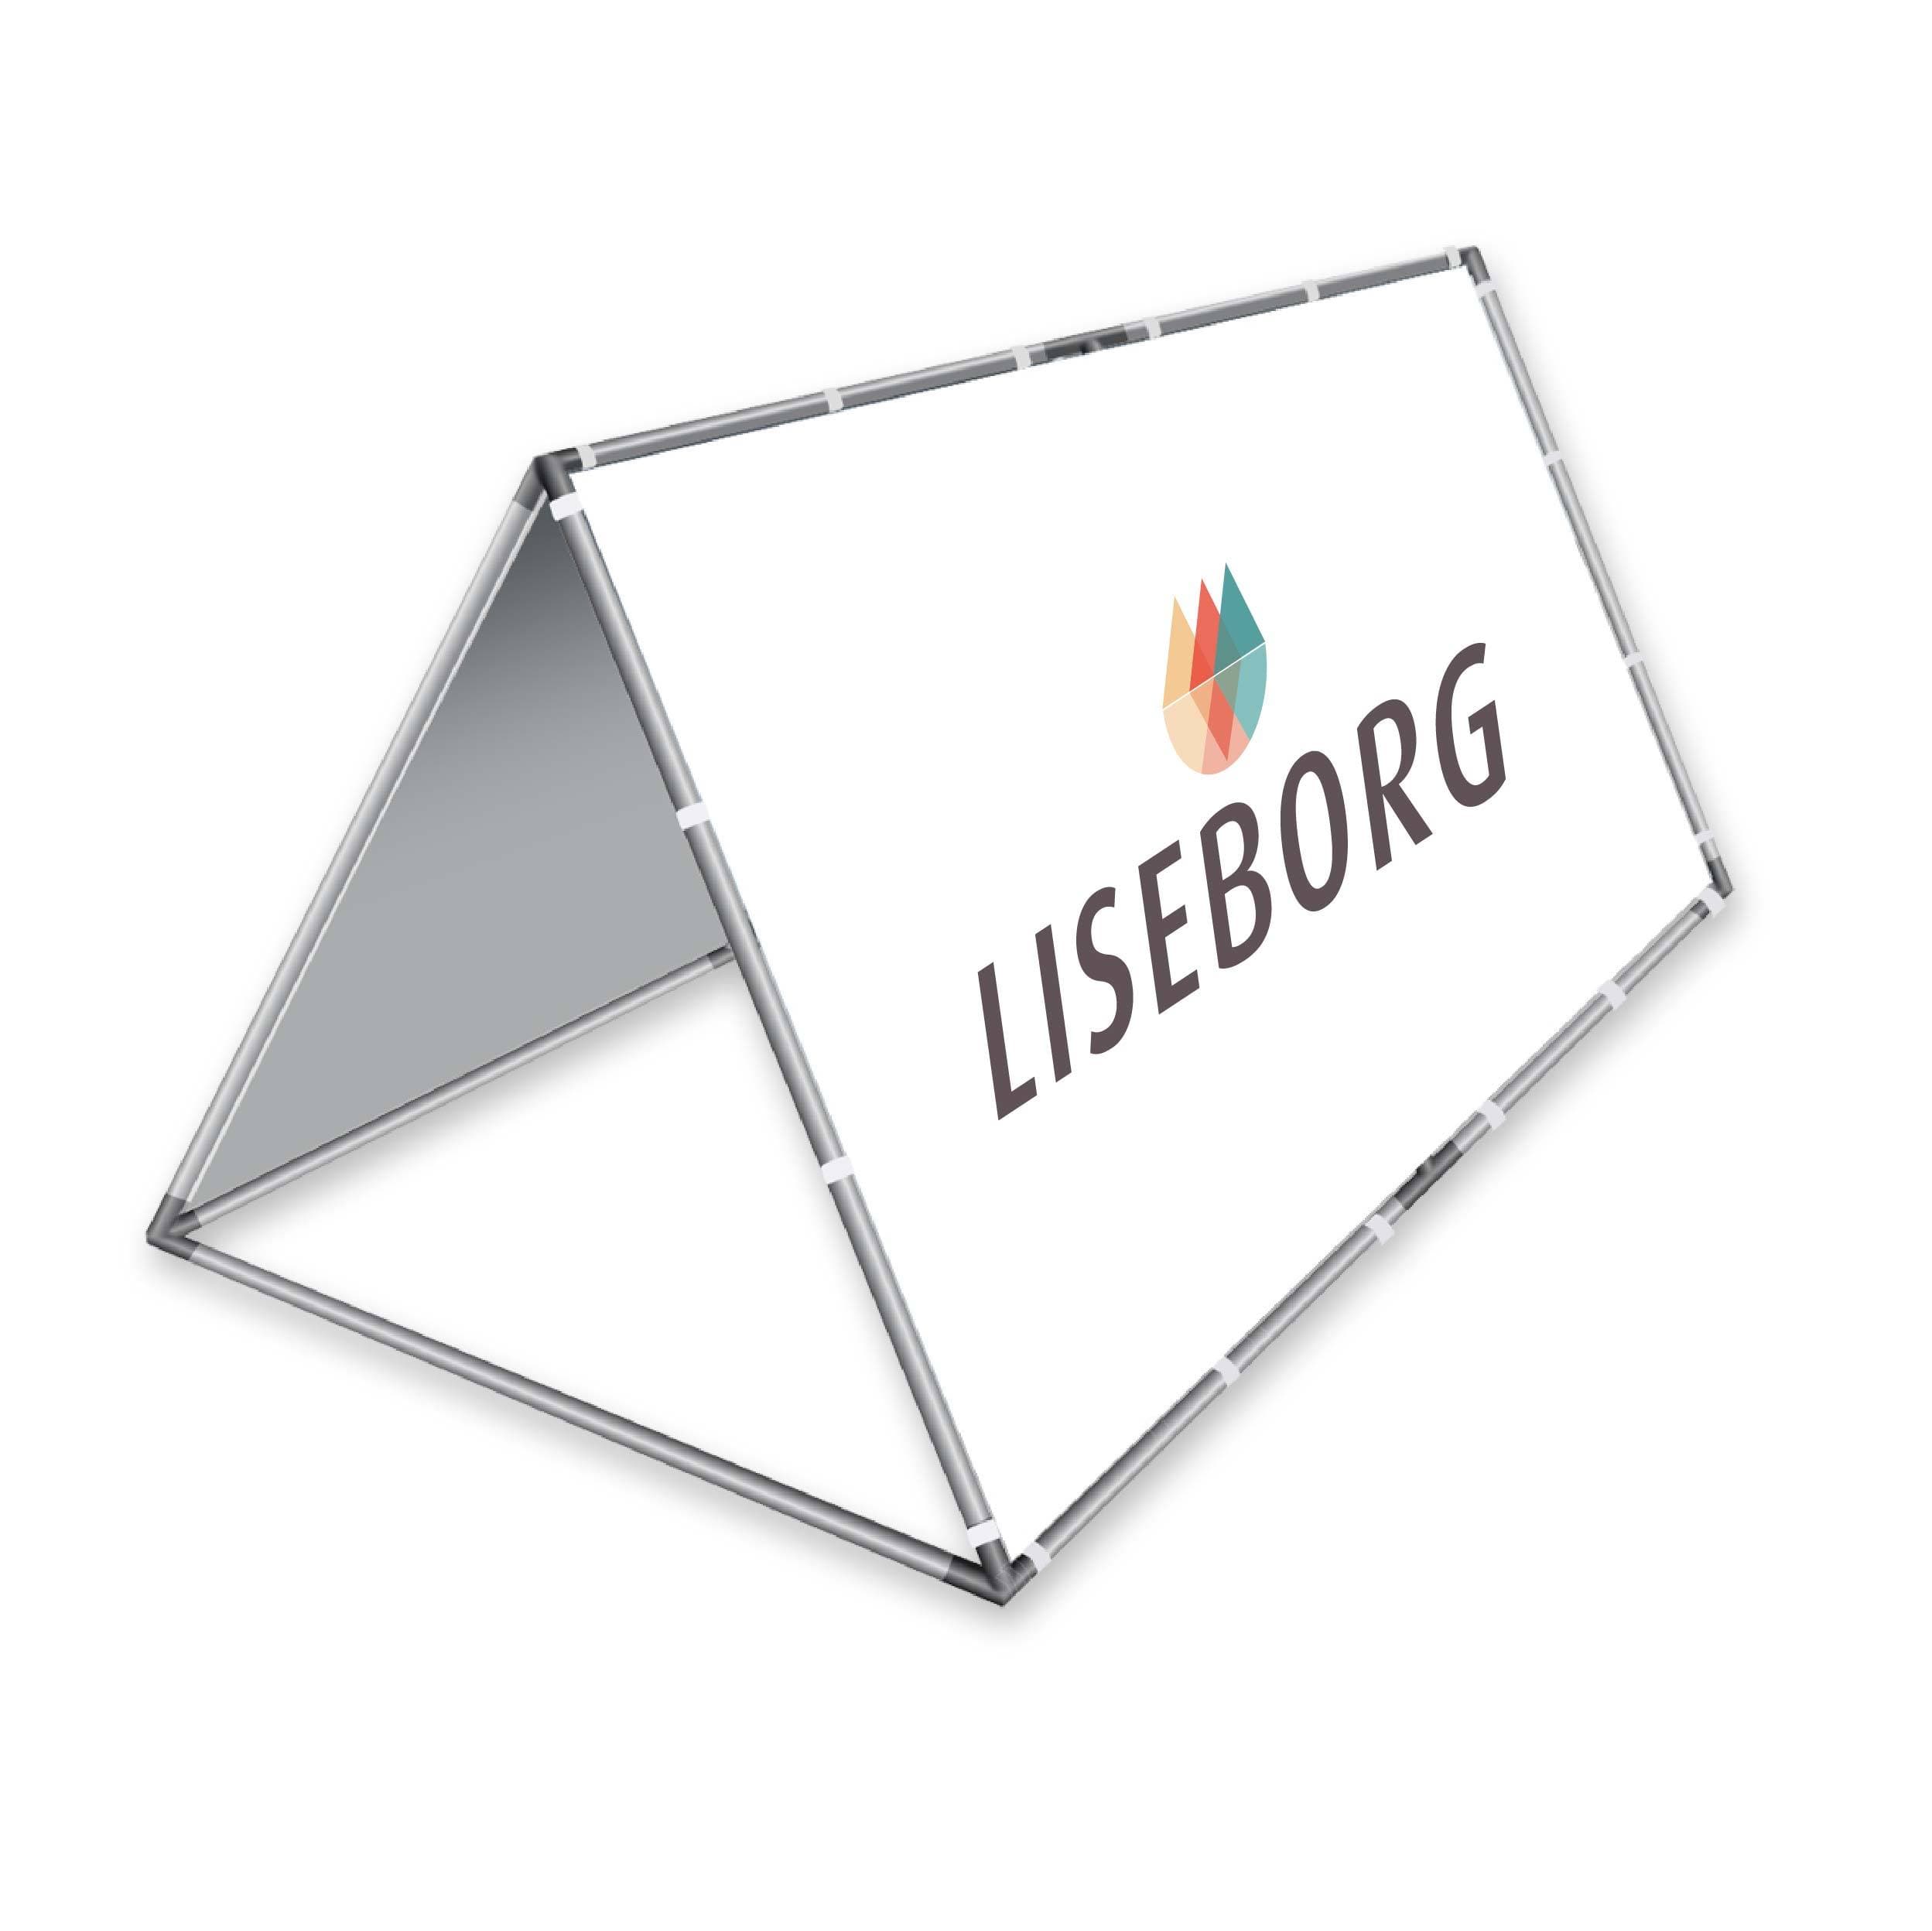 Se Dobbeltsidet aluminium A-frame 100 x 200 cm. hos Liseborg